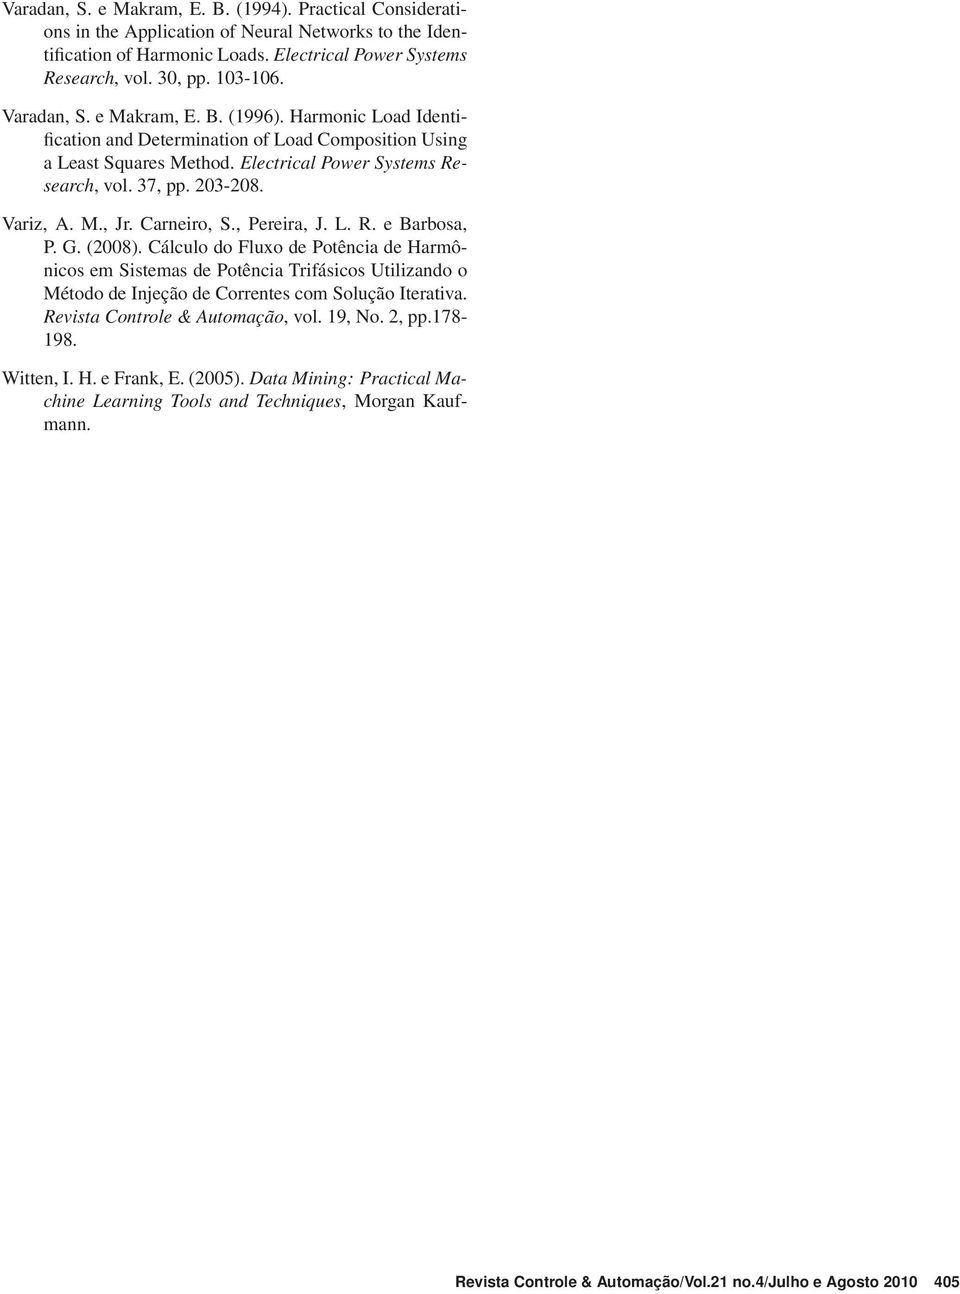 Carneiro, S., Pereira, J. L. R. e Barbosa, P. G. (28). Cálculo do Fluxo de Potência de Harmônicos em Sistemas de Potência Trifásicos Utilizando o Método de Injeção de Correntes com Solução Iterativa.